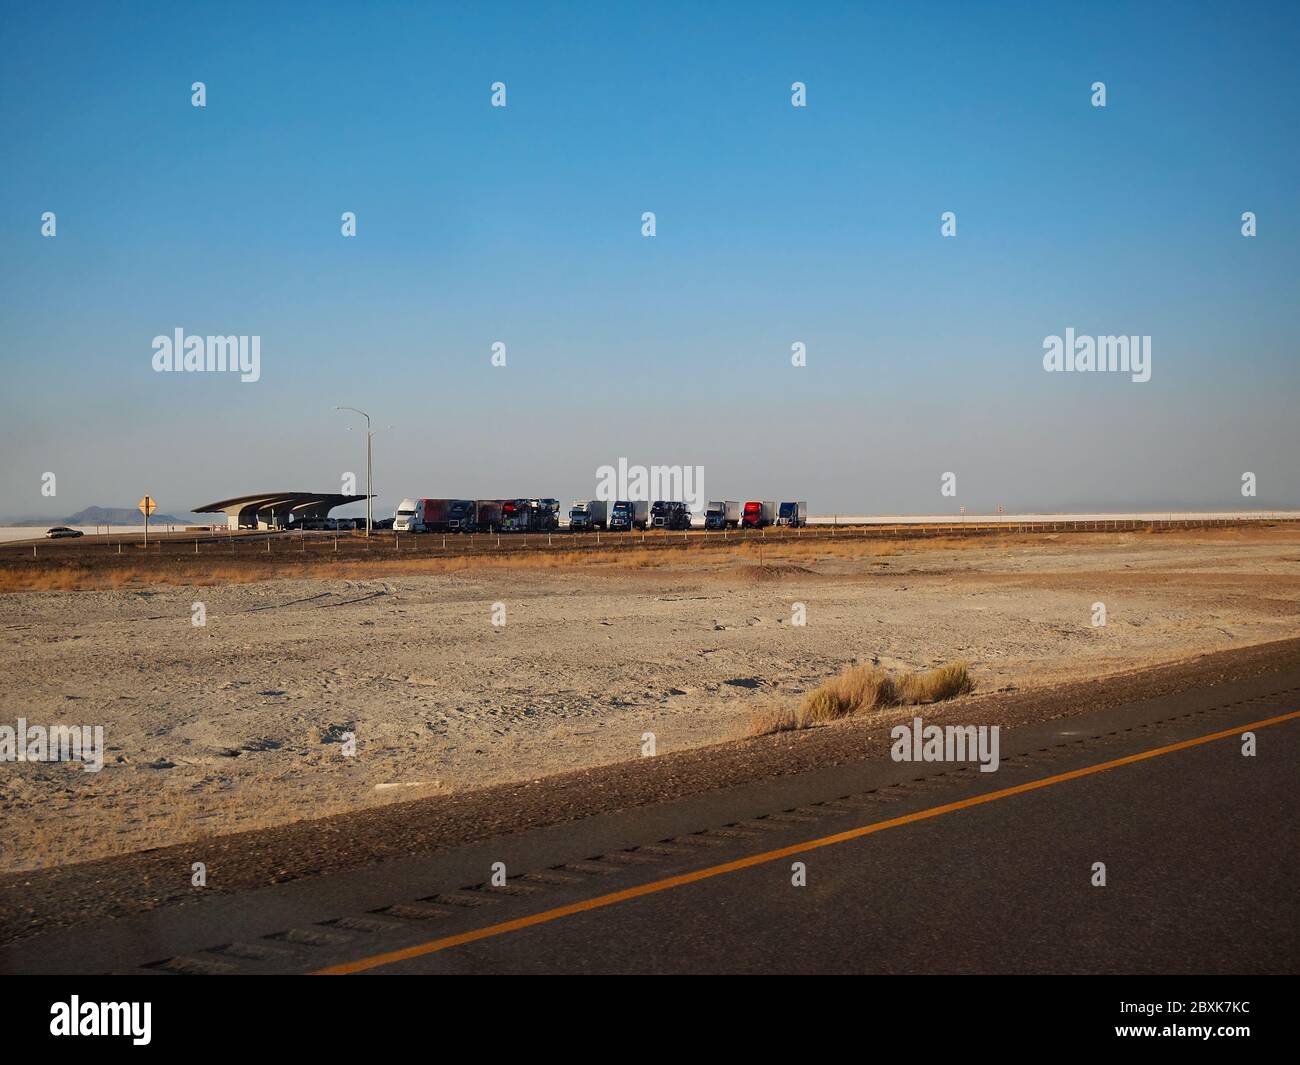 WENDOVER, UTAH - 23. JULI 2018: Eine lange Reihe Sattelschlepper parkte an einem Rastplatz in den Bonneville Salt Flats im Westen Utahs. Stockfoto